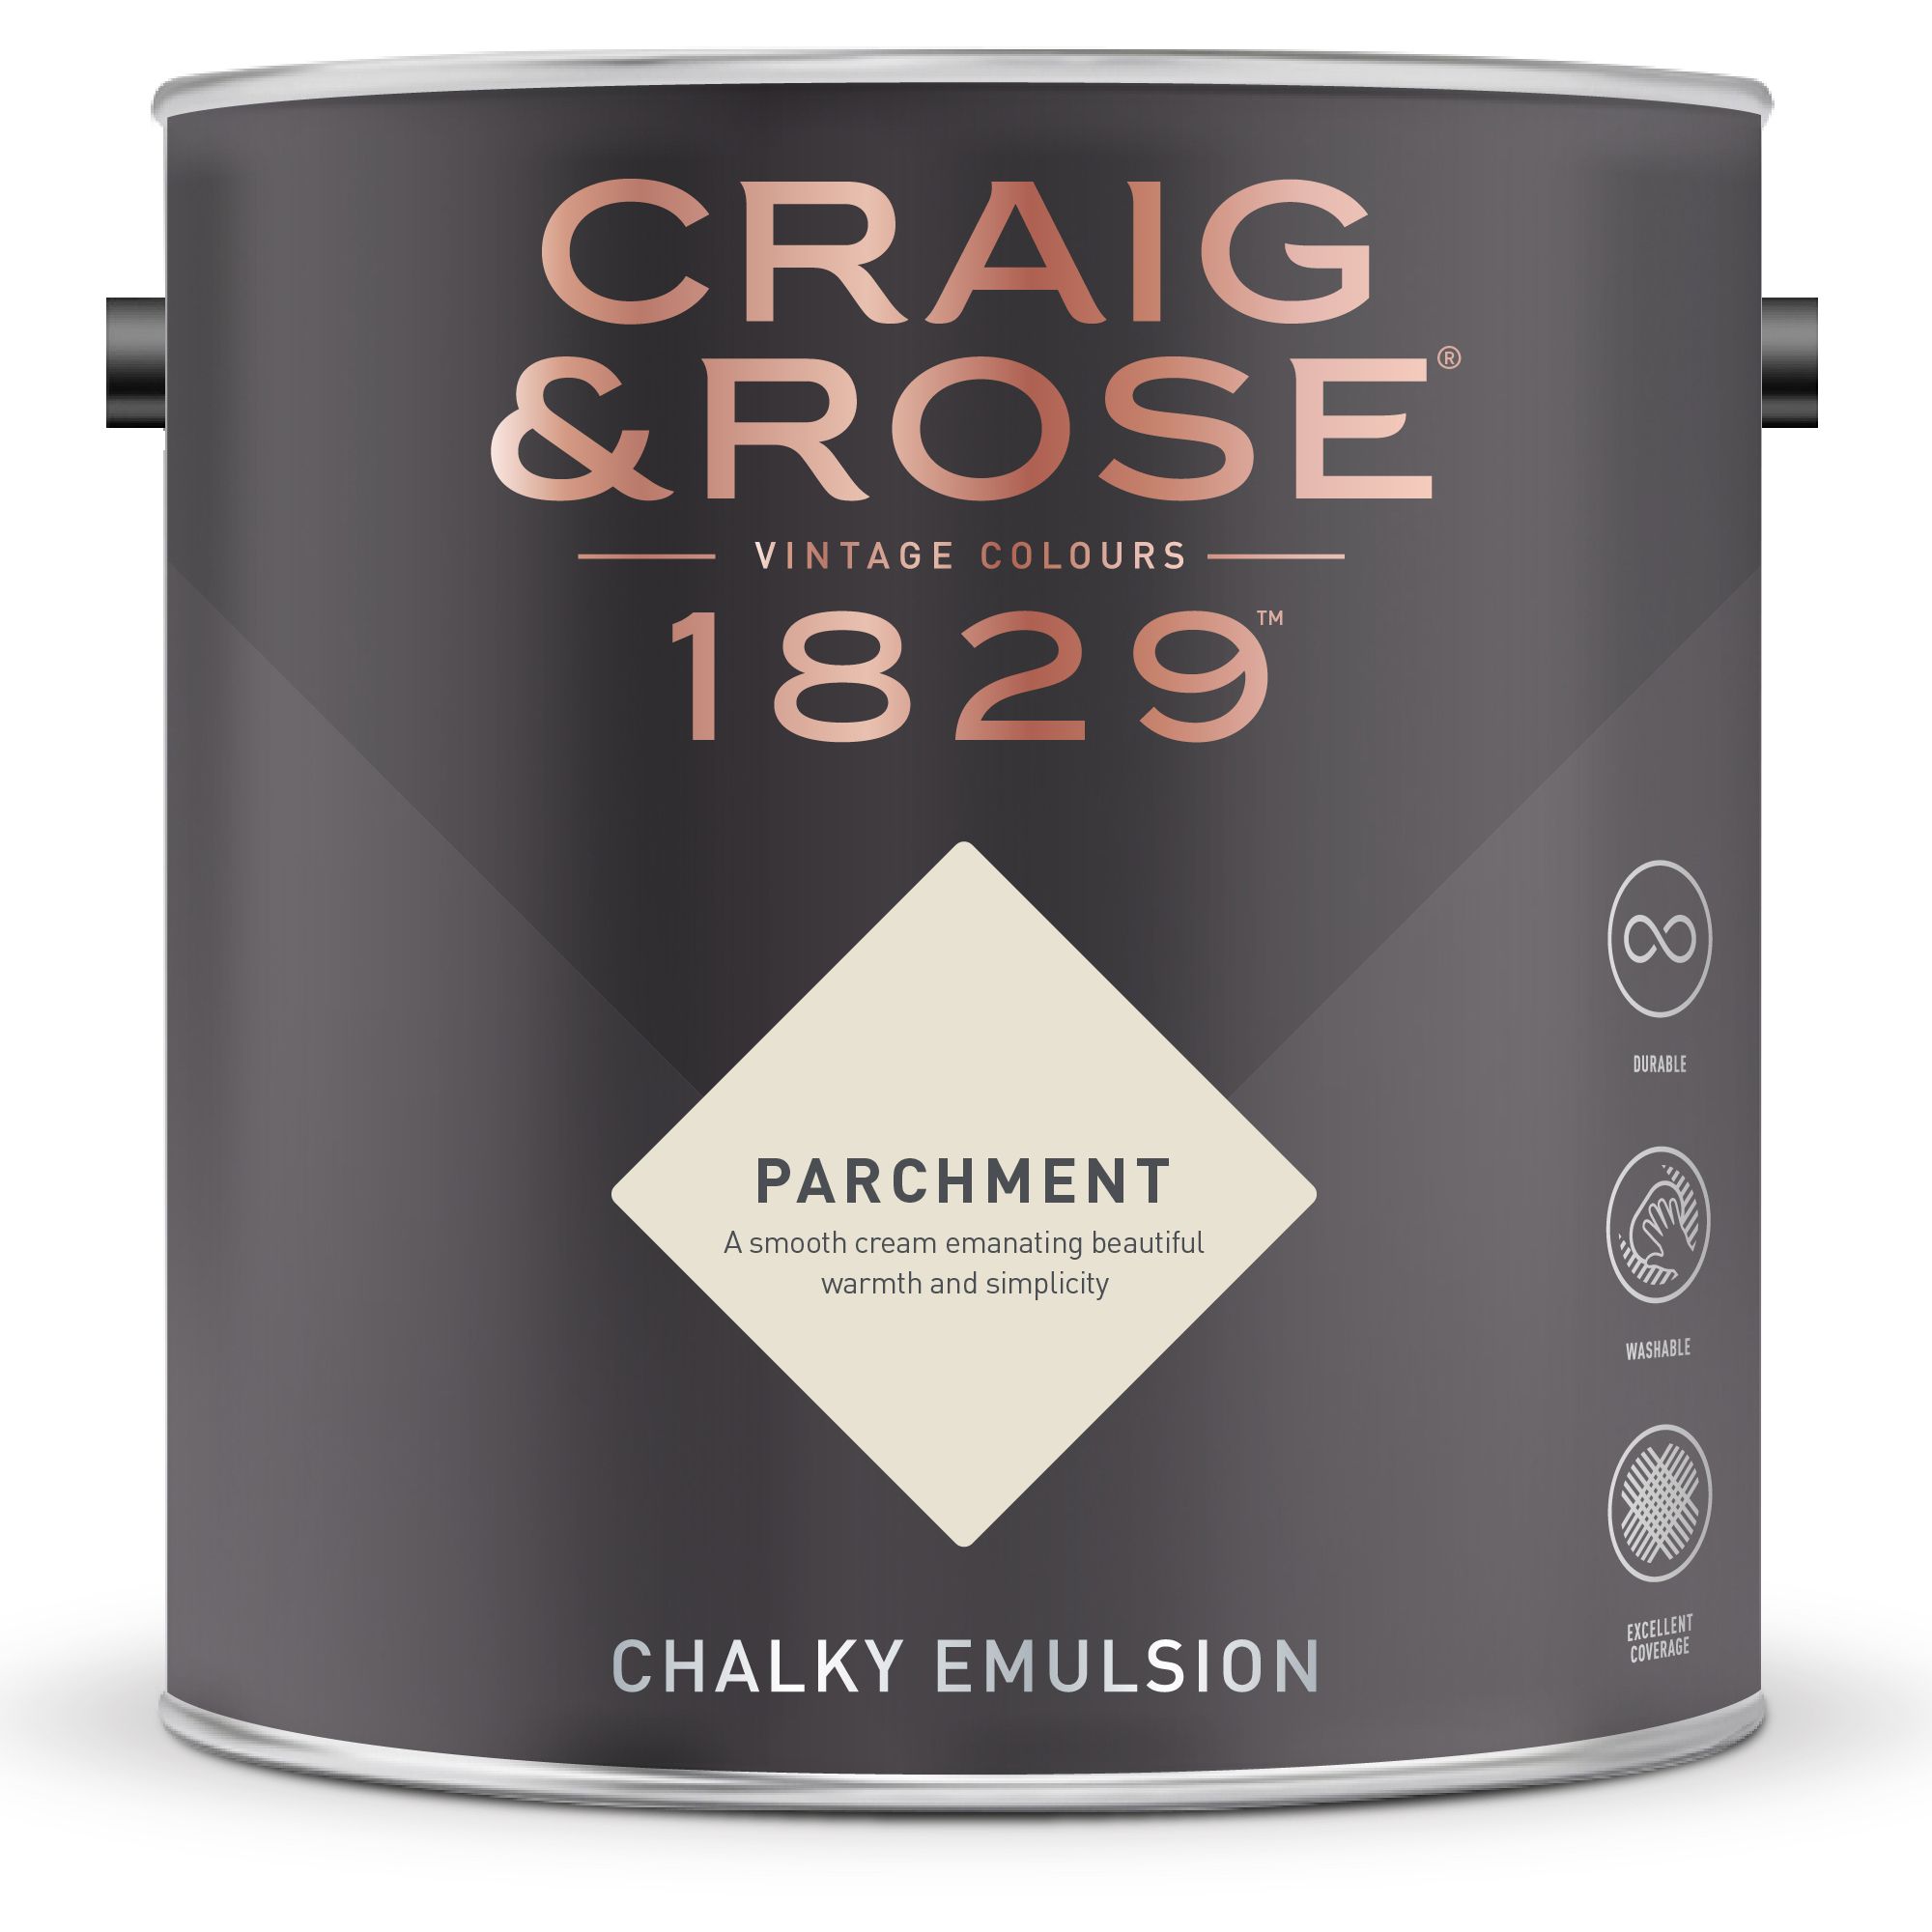 Craig & Rose 1829 Parchment Chalky Emulsion paint, 2.5L